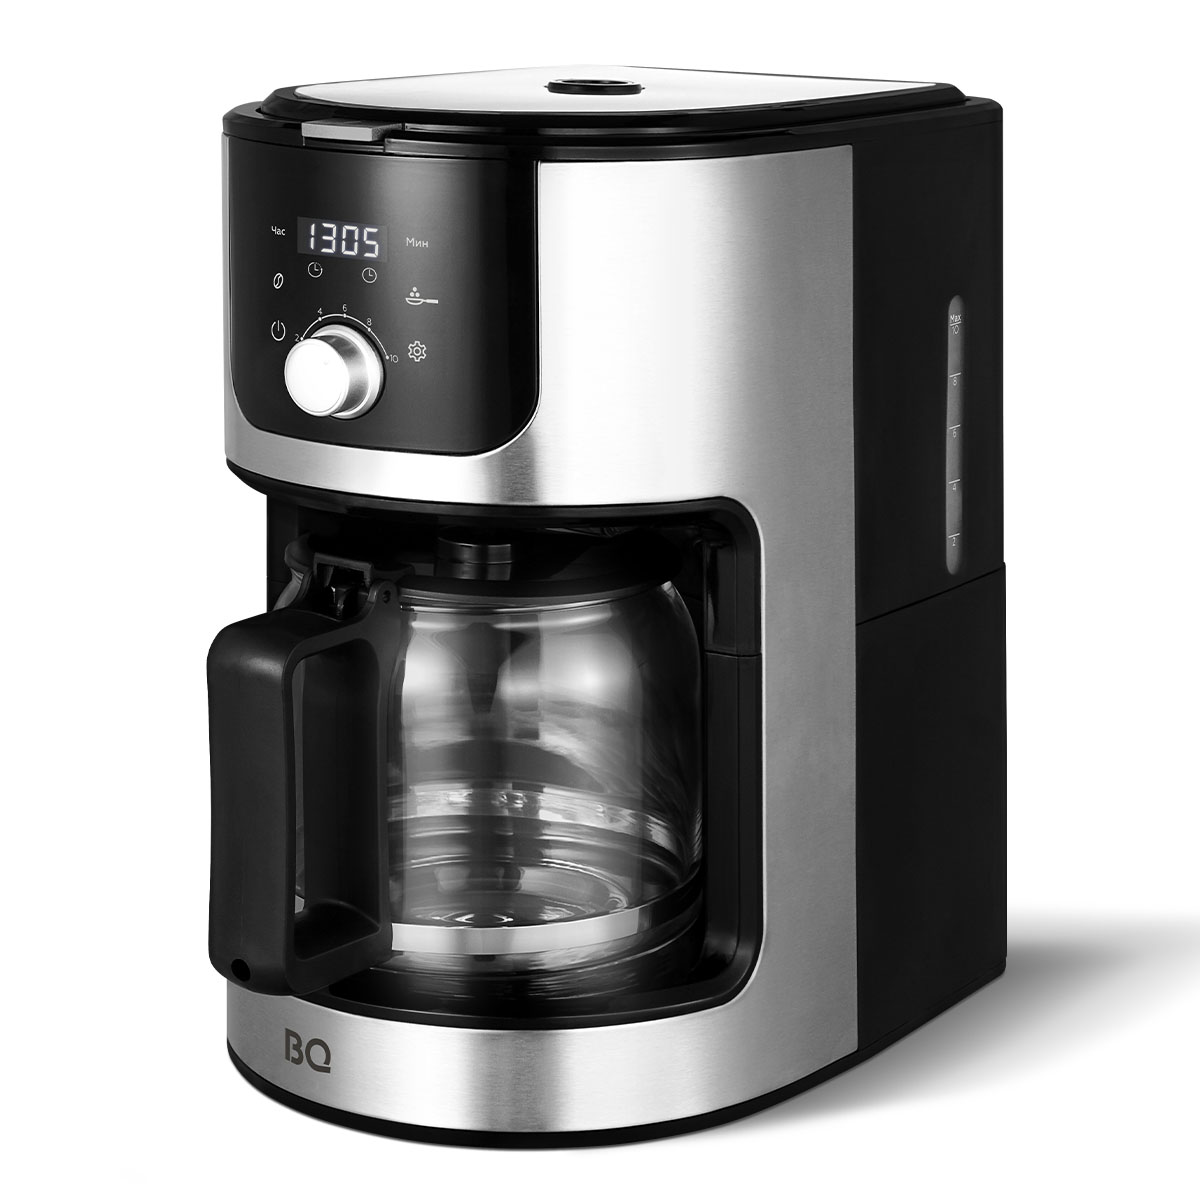 Кофеварка капельного типа BQ CM1010 серебристый, черный капельная кофеварка domfy dsm cm301 серебристый